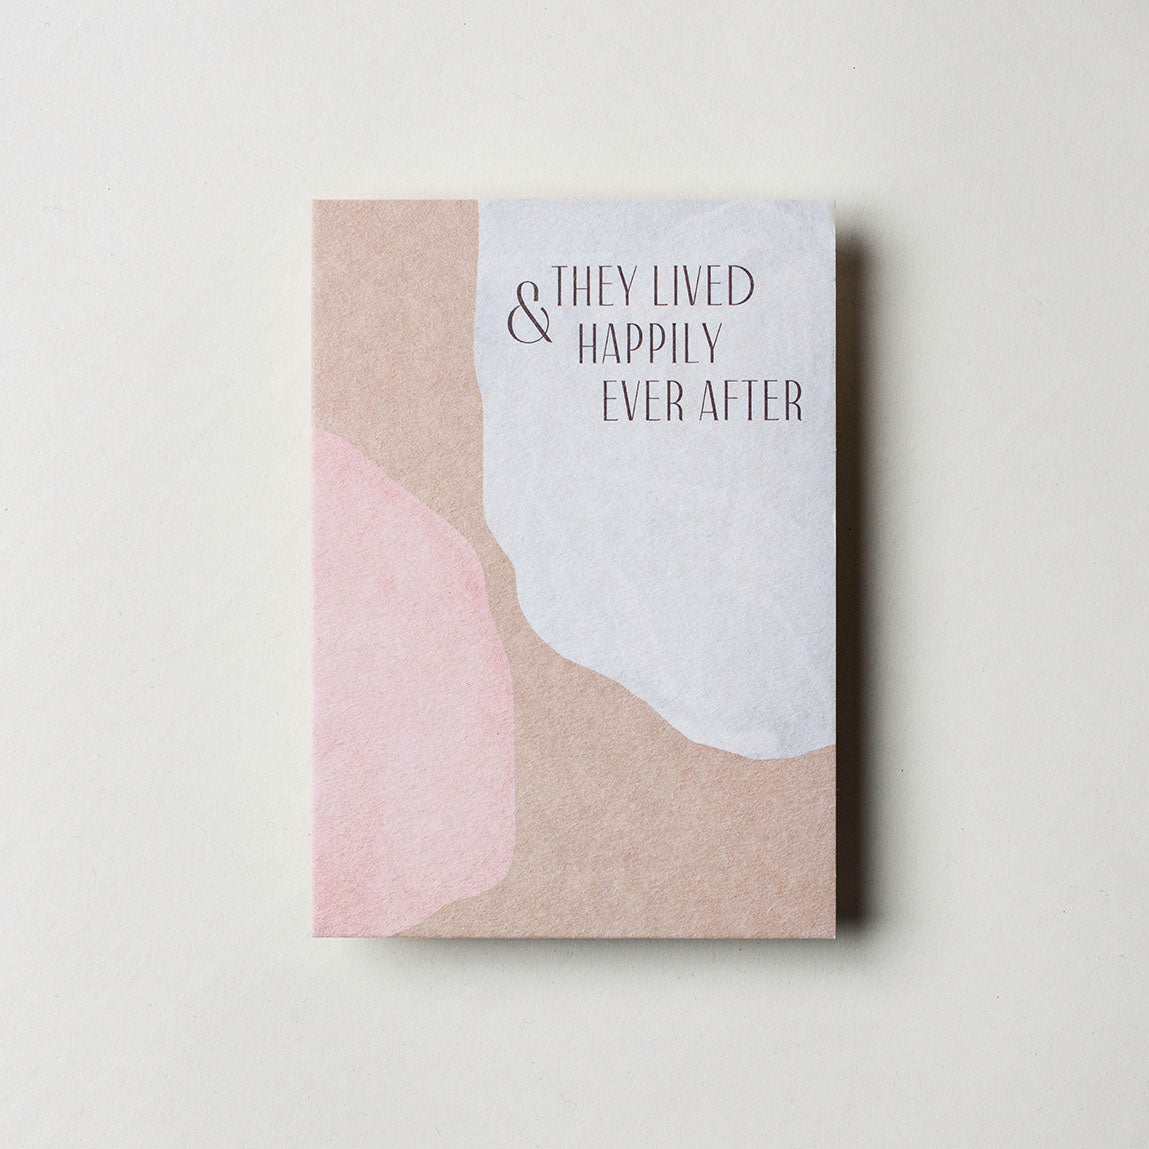 Postkarte "& They Lived Happily Ever After" gedruckt auf Finnpappe. DIN A6 Karte in den Fraben rosa, braun und weiß. 